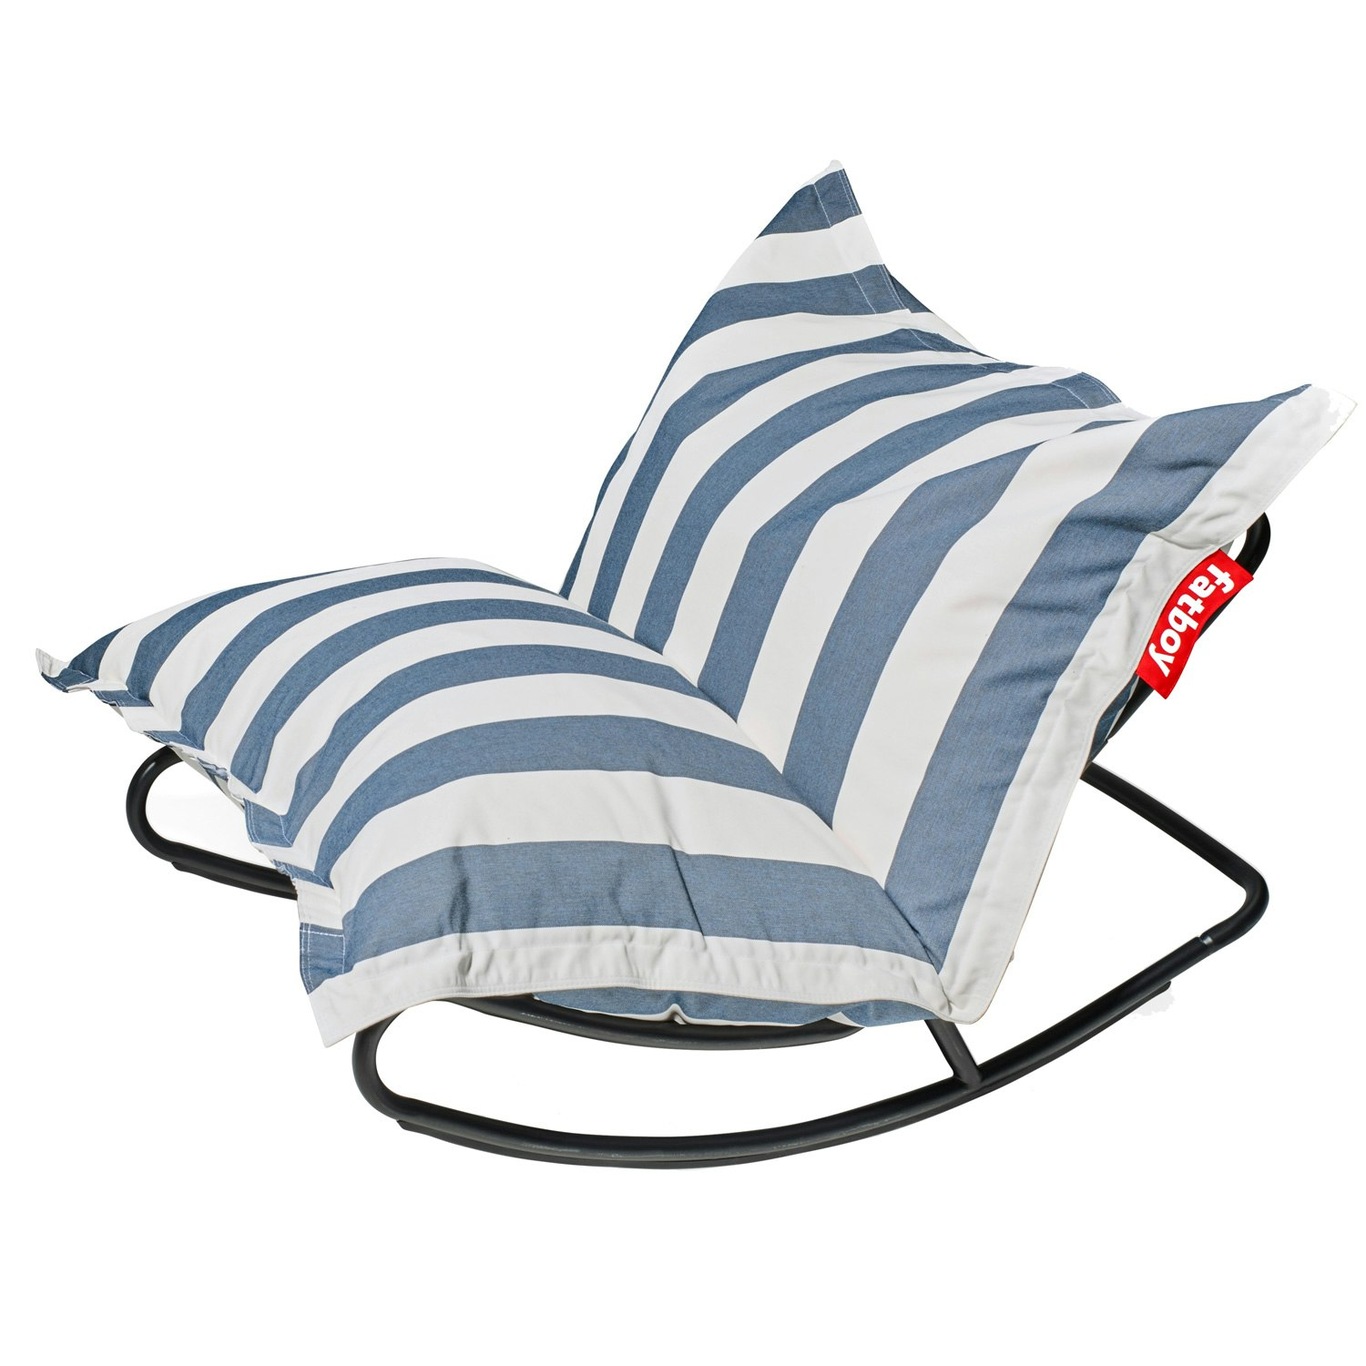 Rock 'n Roll Rocking Chair With Bean Bag, Stripe Ocean Blue